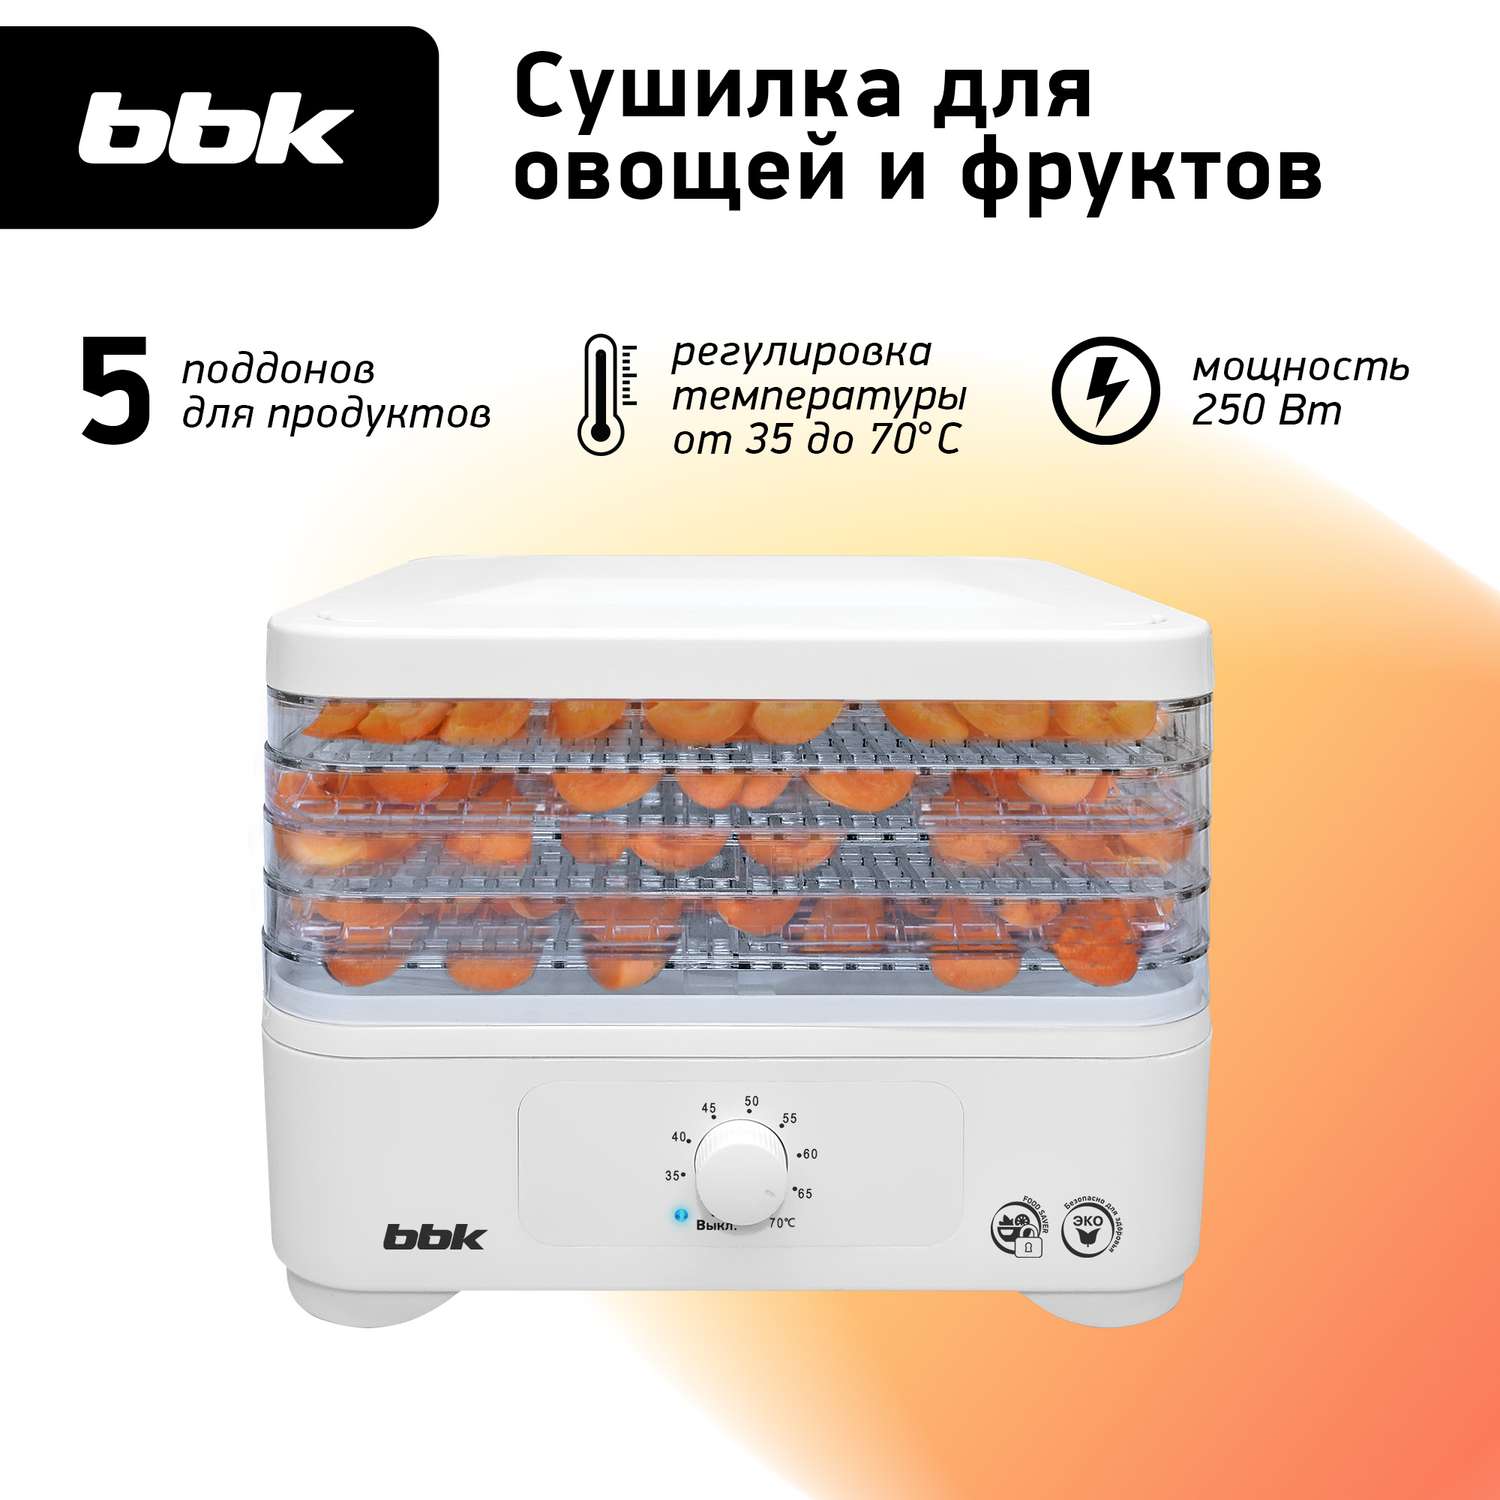 Сушилка электрическая BBK BDH302M мощность 250 Вт механическое управление белая - фото 1